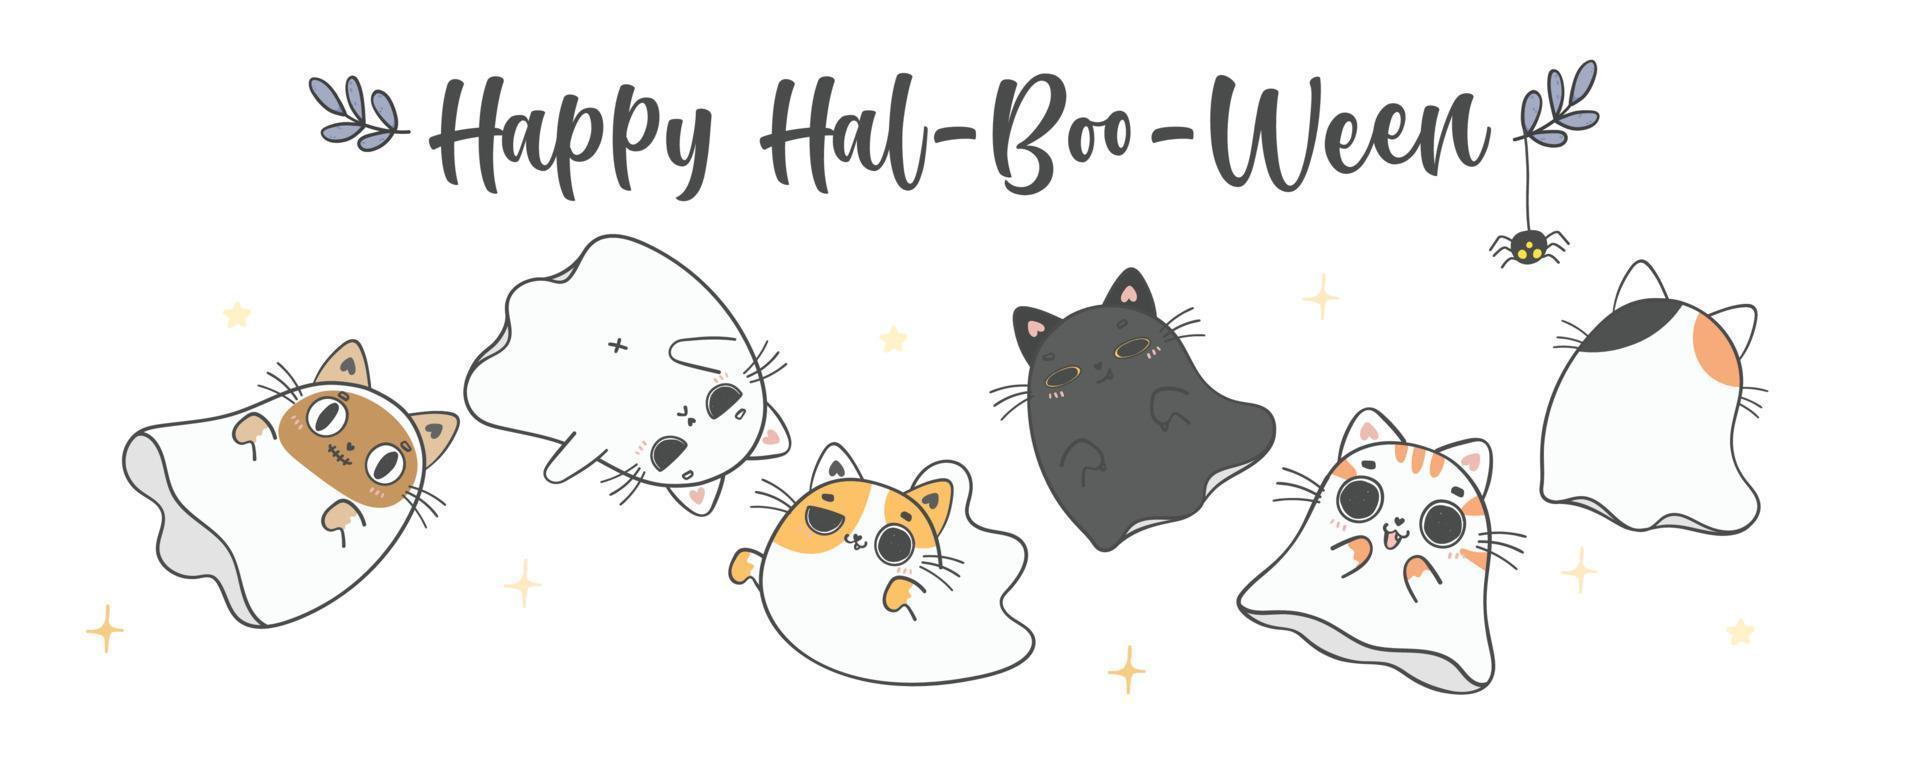 gruppo di carino Halloween gattino gatto fantasma cartone animato animale domestico scarabocchio mano disegno vettore